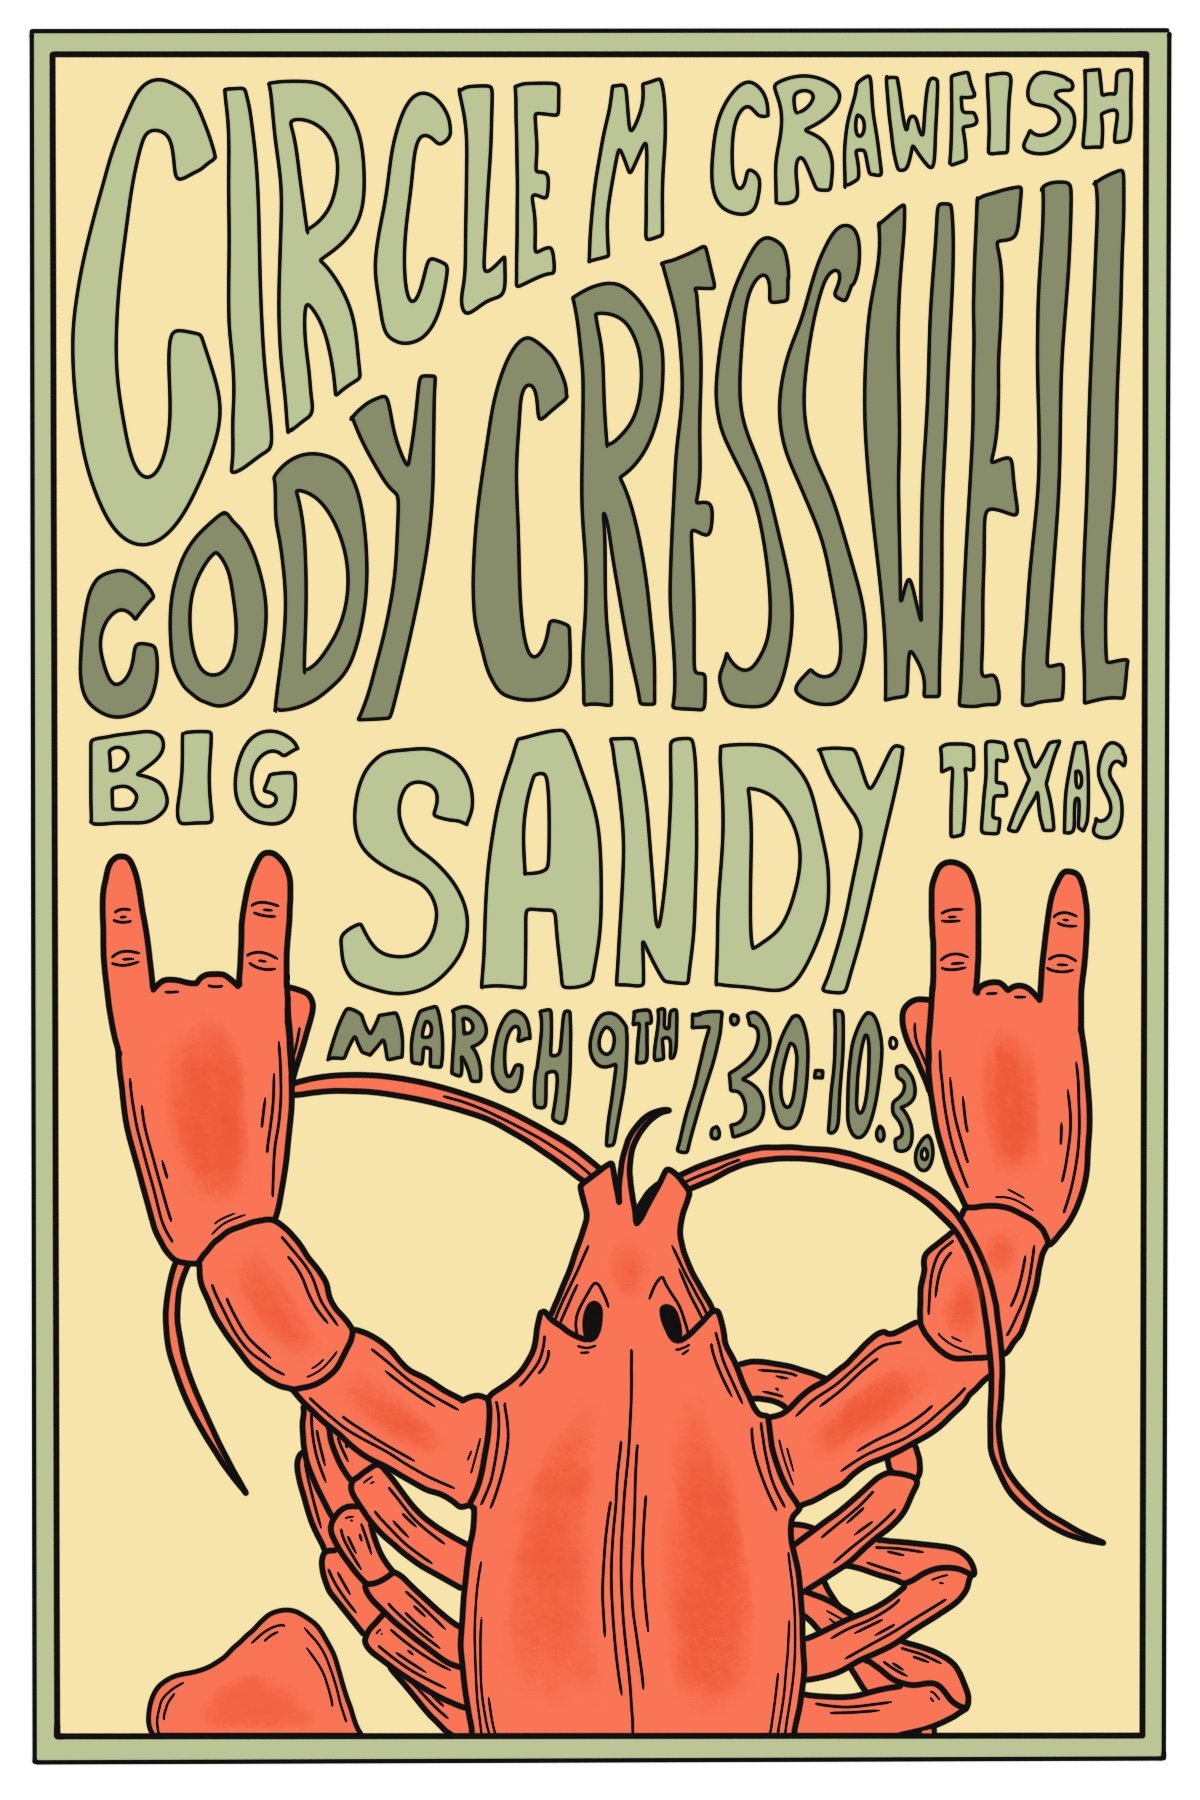 Circle M Crawfish "Show Poster"